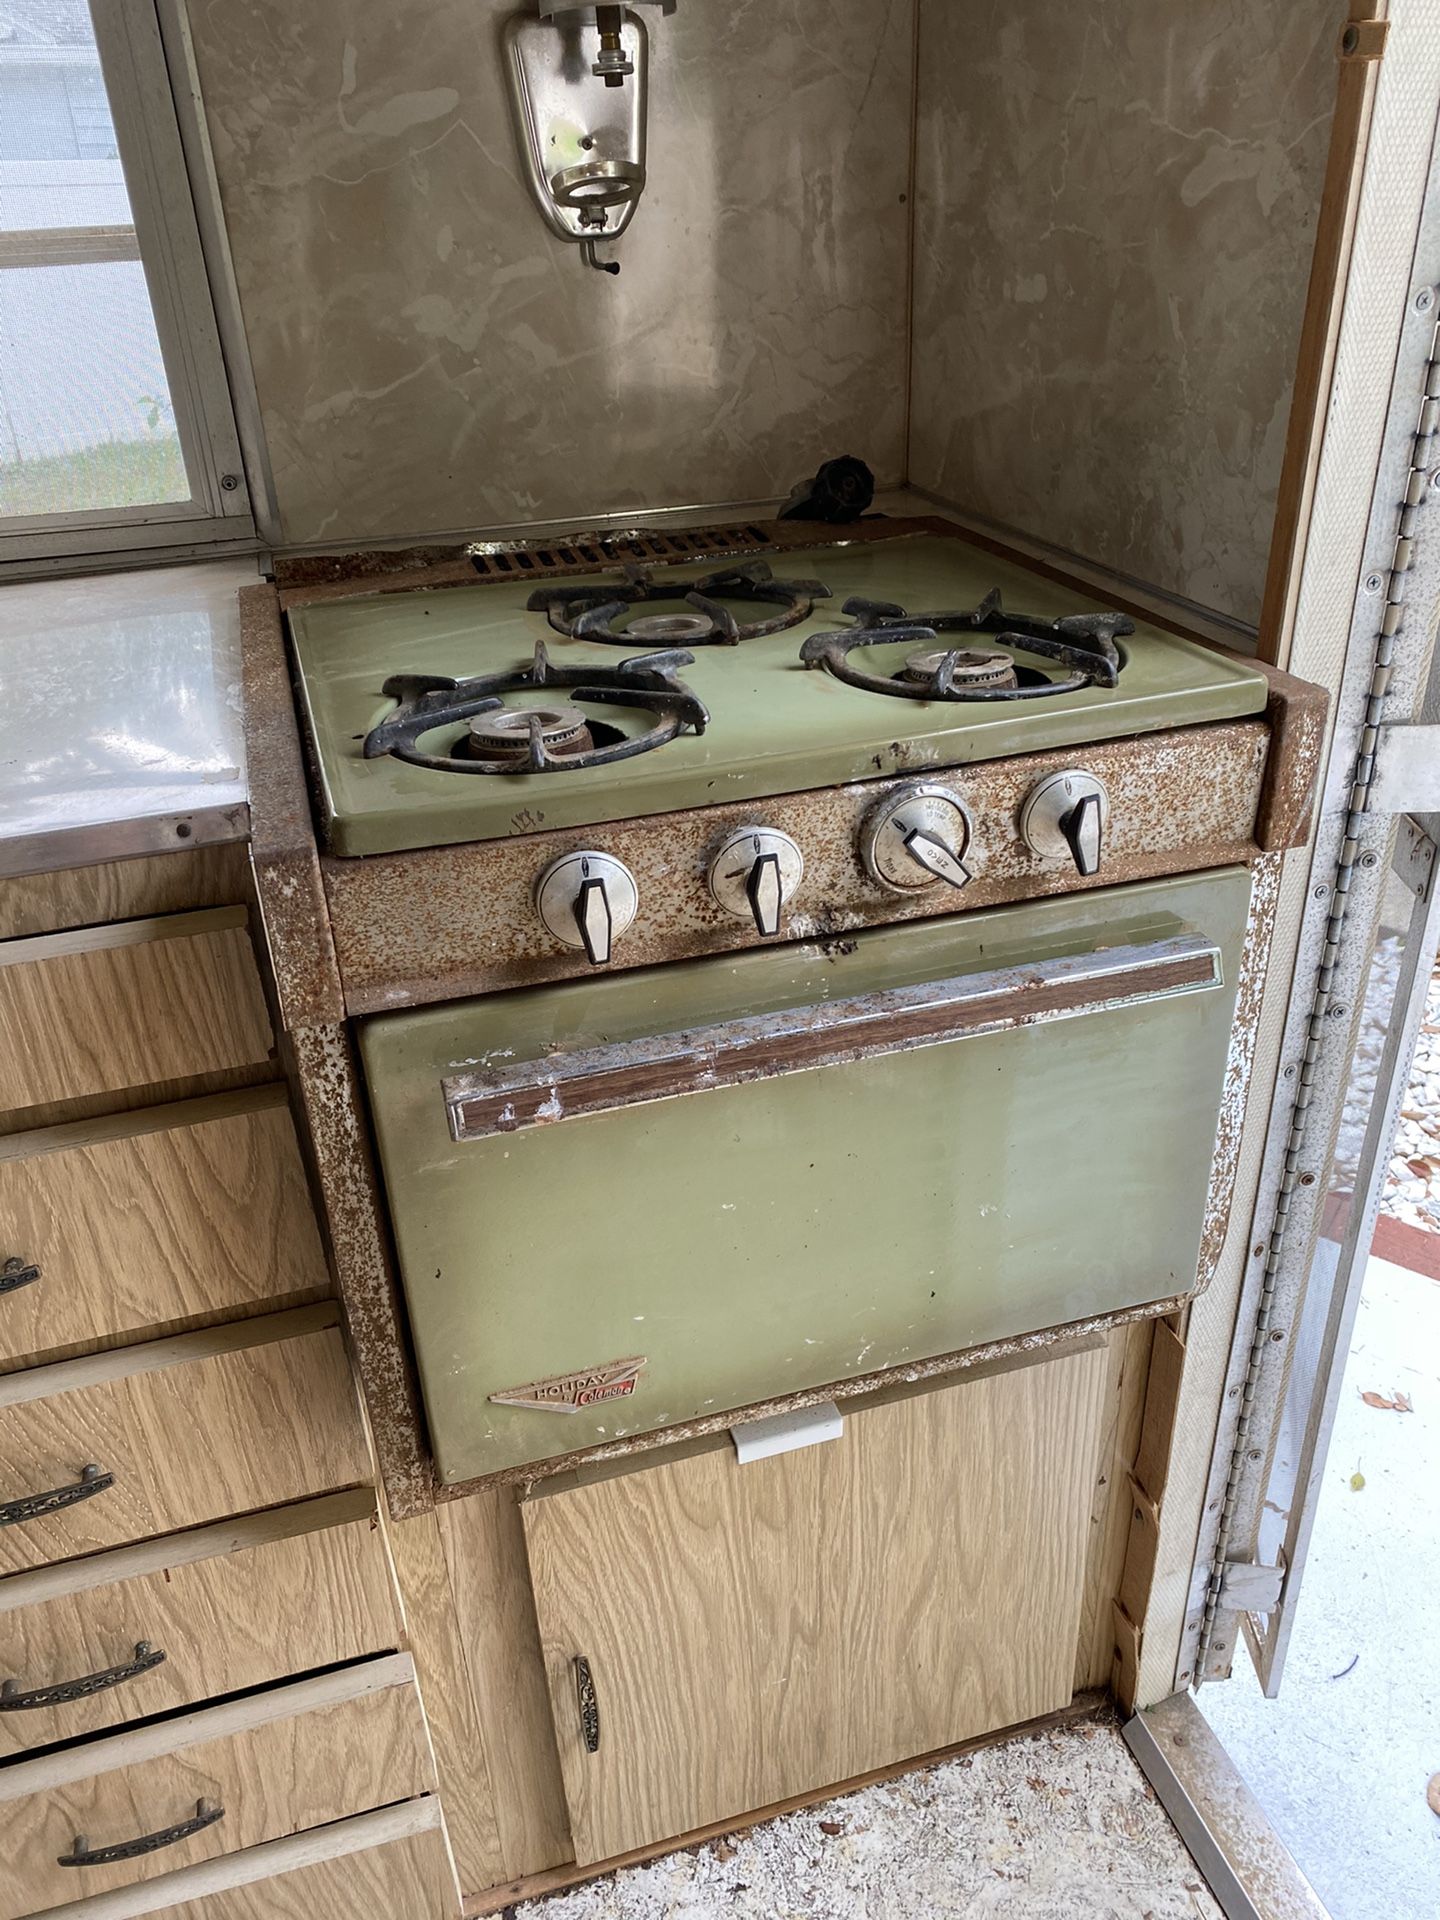 Vintage camper stove